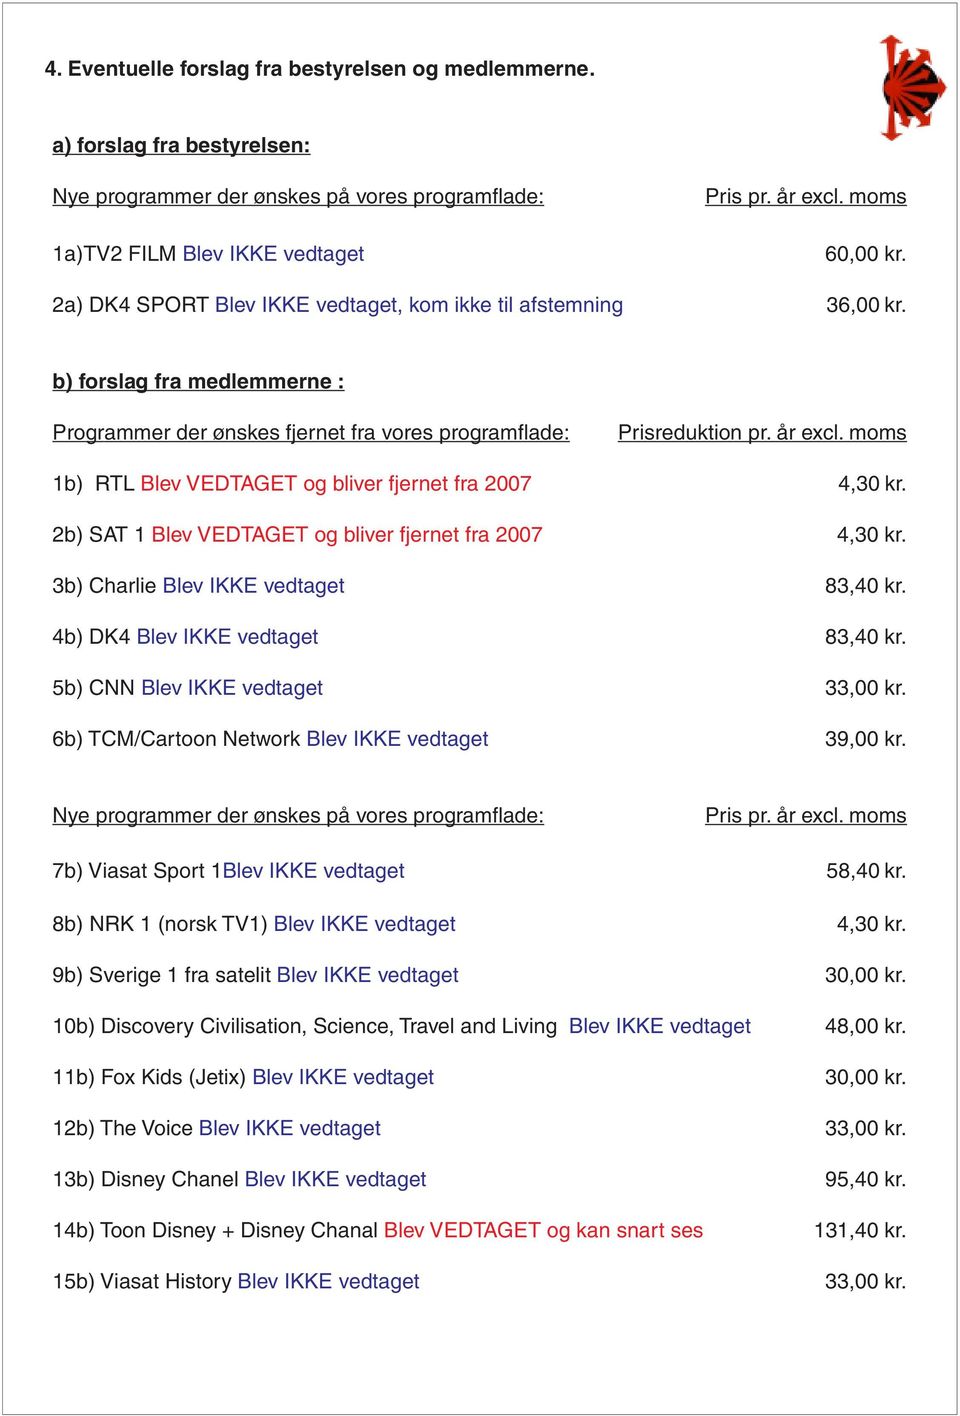 moms 1b) RTL Blev VEDTAGET og bliver fjernet fra 2007 4,30 kr. 2b) SAT 1 Blev VEDTAGET og bliver fjernet fra 2007 4,30 kr. 3b) Charlie Blev IKKE vedtaget 83,40 kr. 4b) DK4 Blev IKKE vedtaget 83,40 kr.